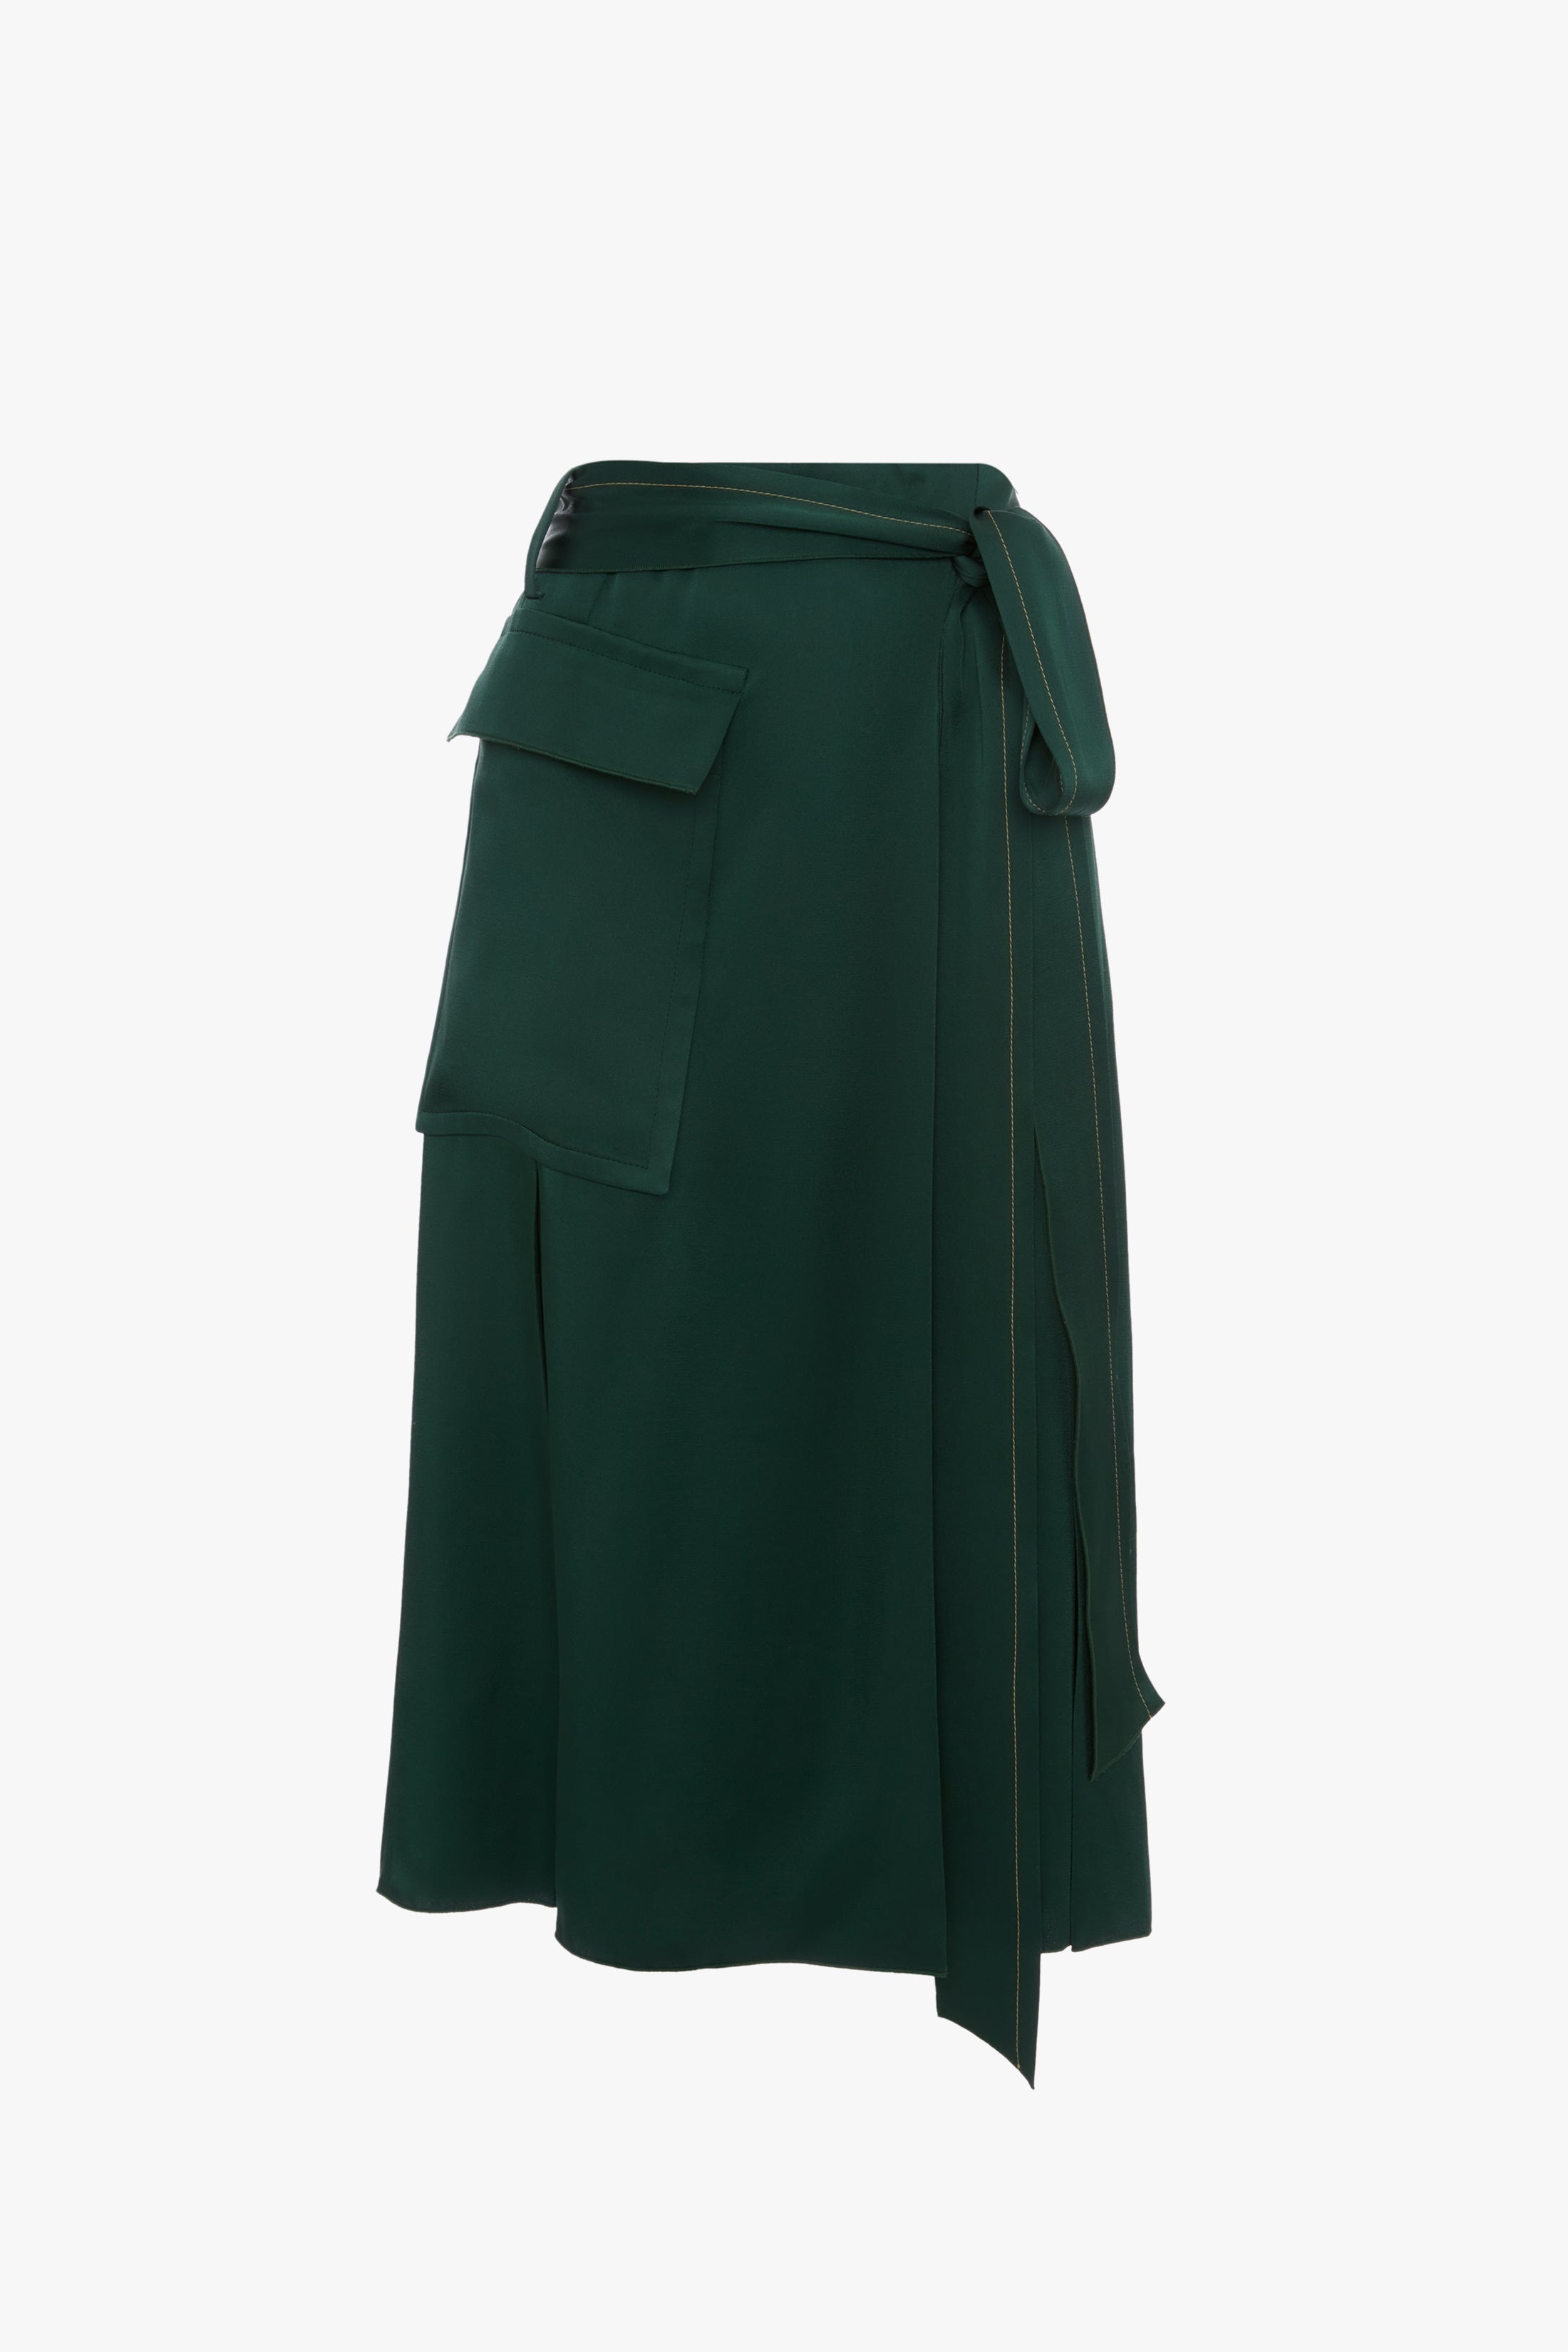 Trench Skirt in Bottle Green - 1